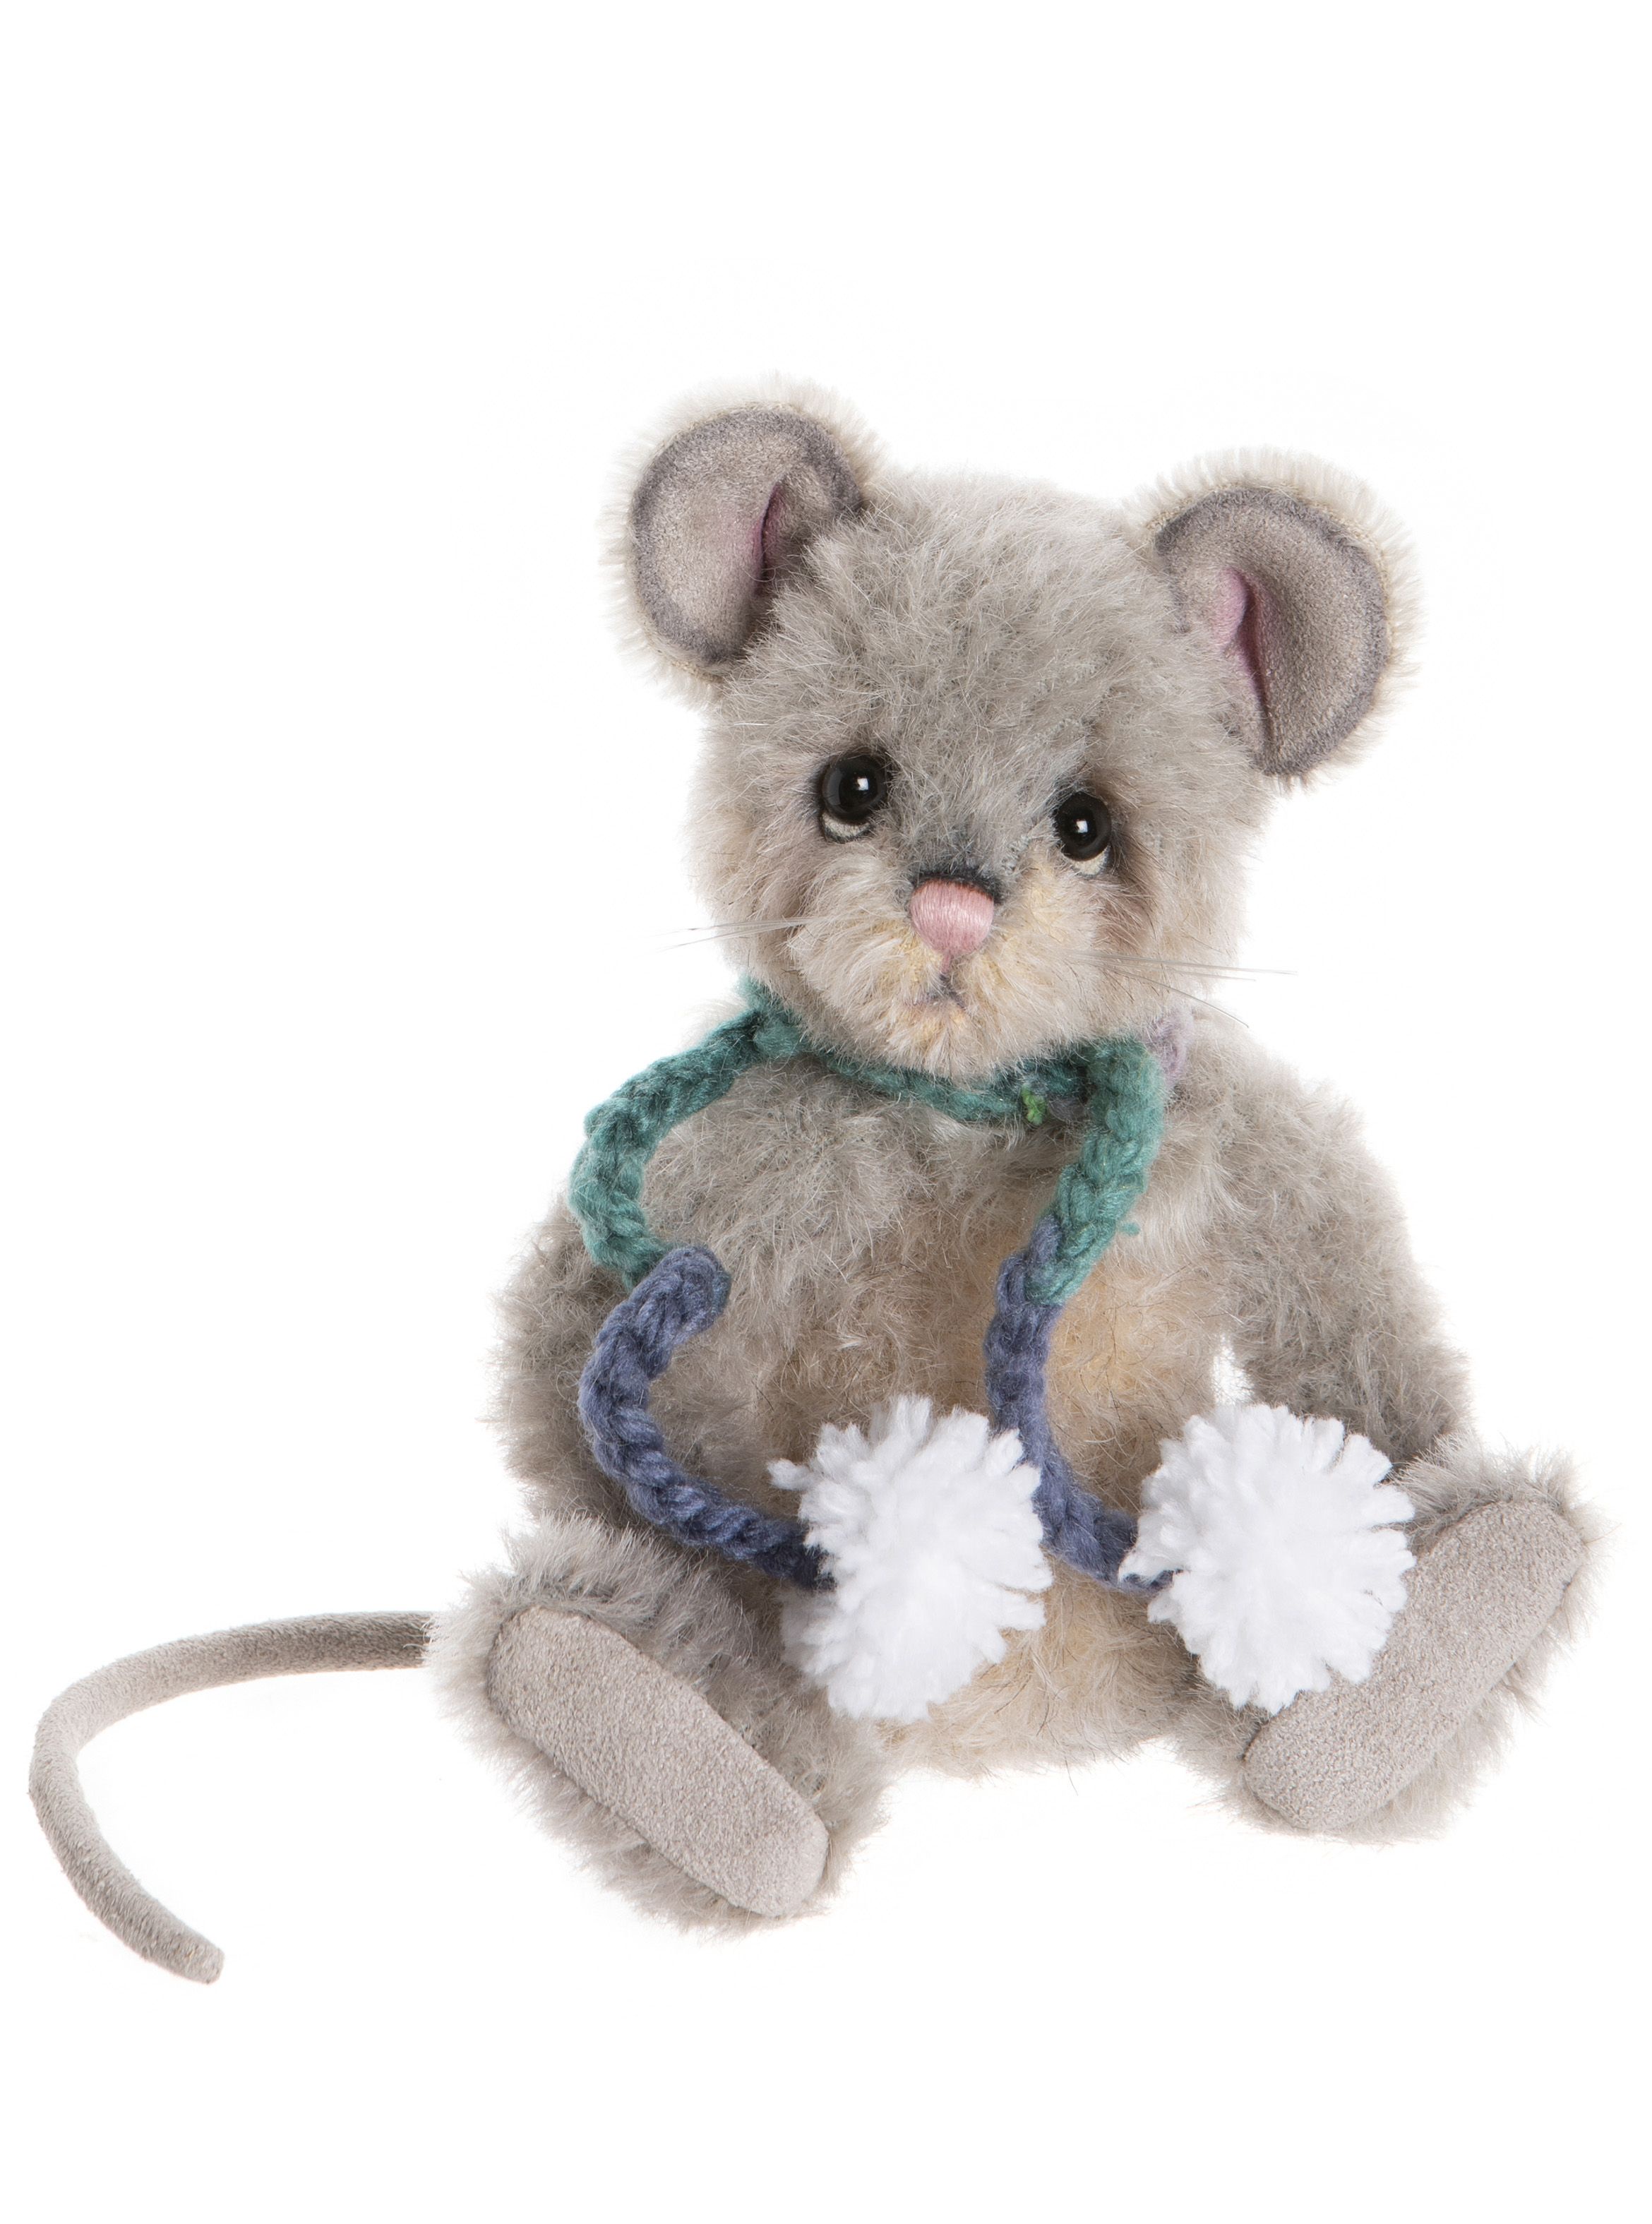 mouse teddy bear